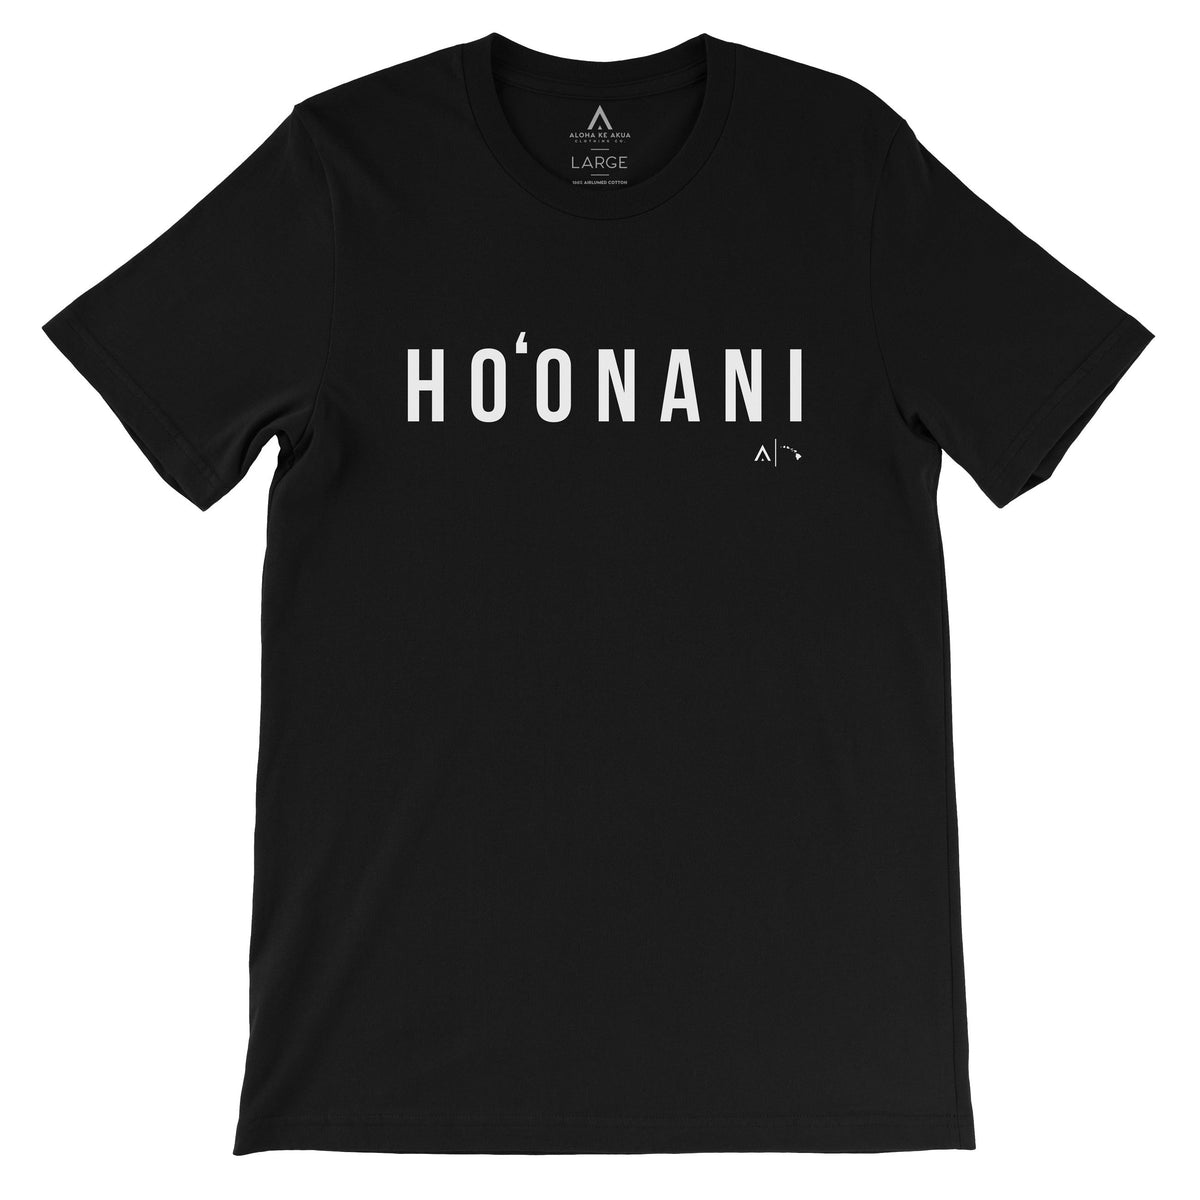 Pop-Up Mākeke - Aloha Ke Akua Clothing - Ho‘onani Men&#39;s Short Sleeve T-Shirt - Black - Front View